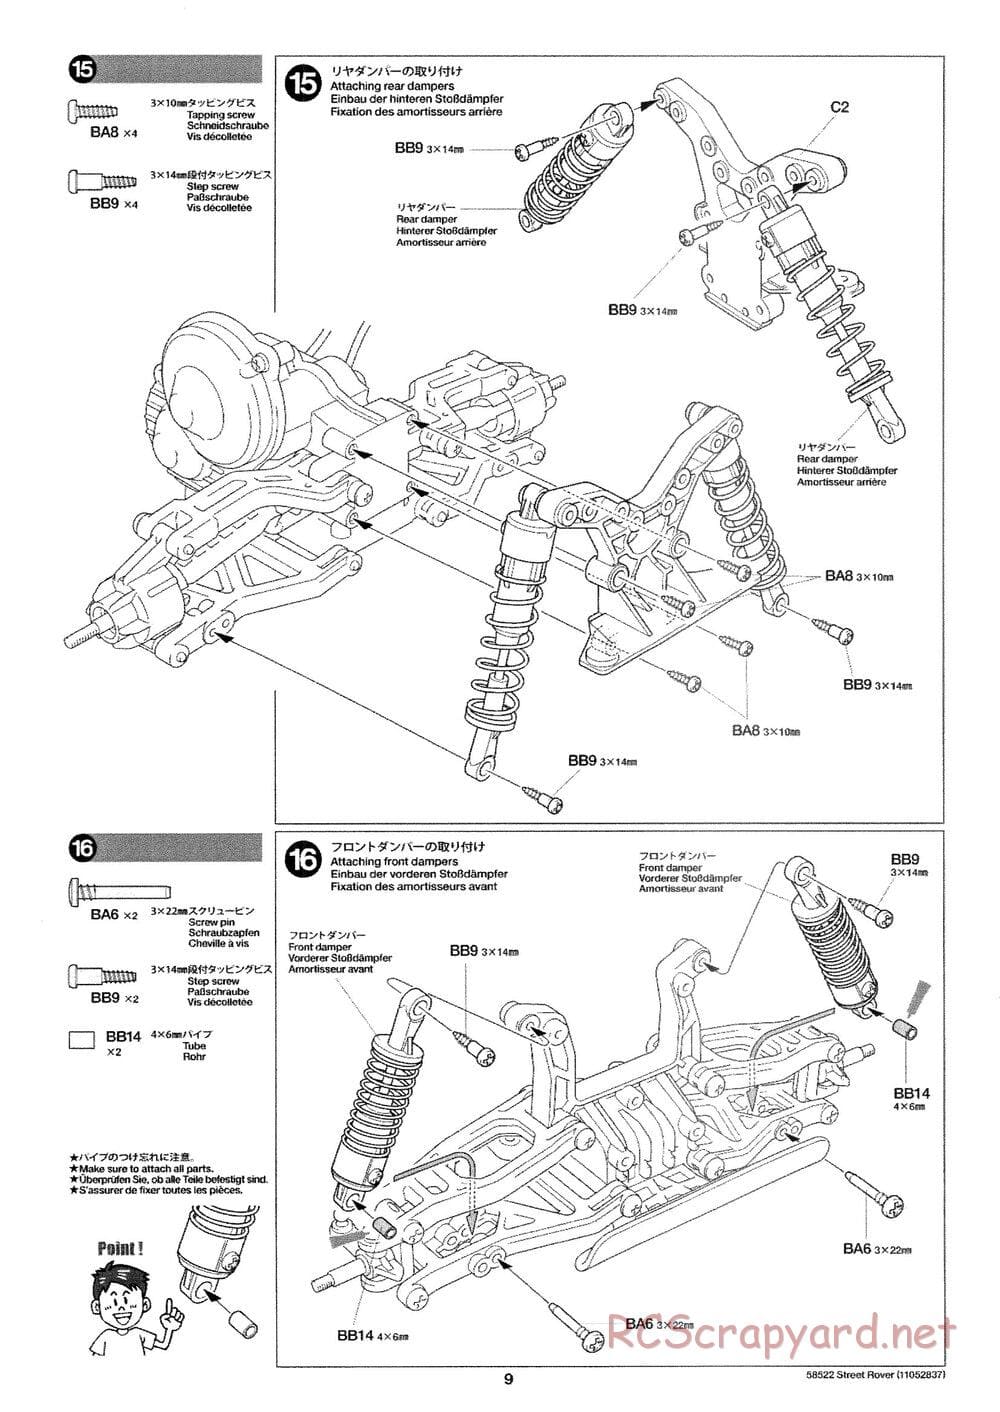 Tamiya - Street Rover Chassis - Manual - Page 10